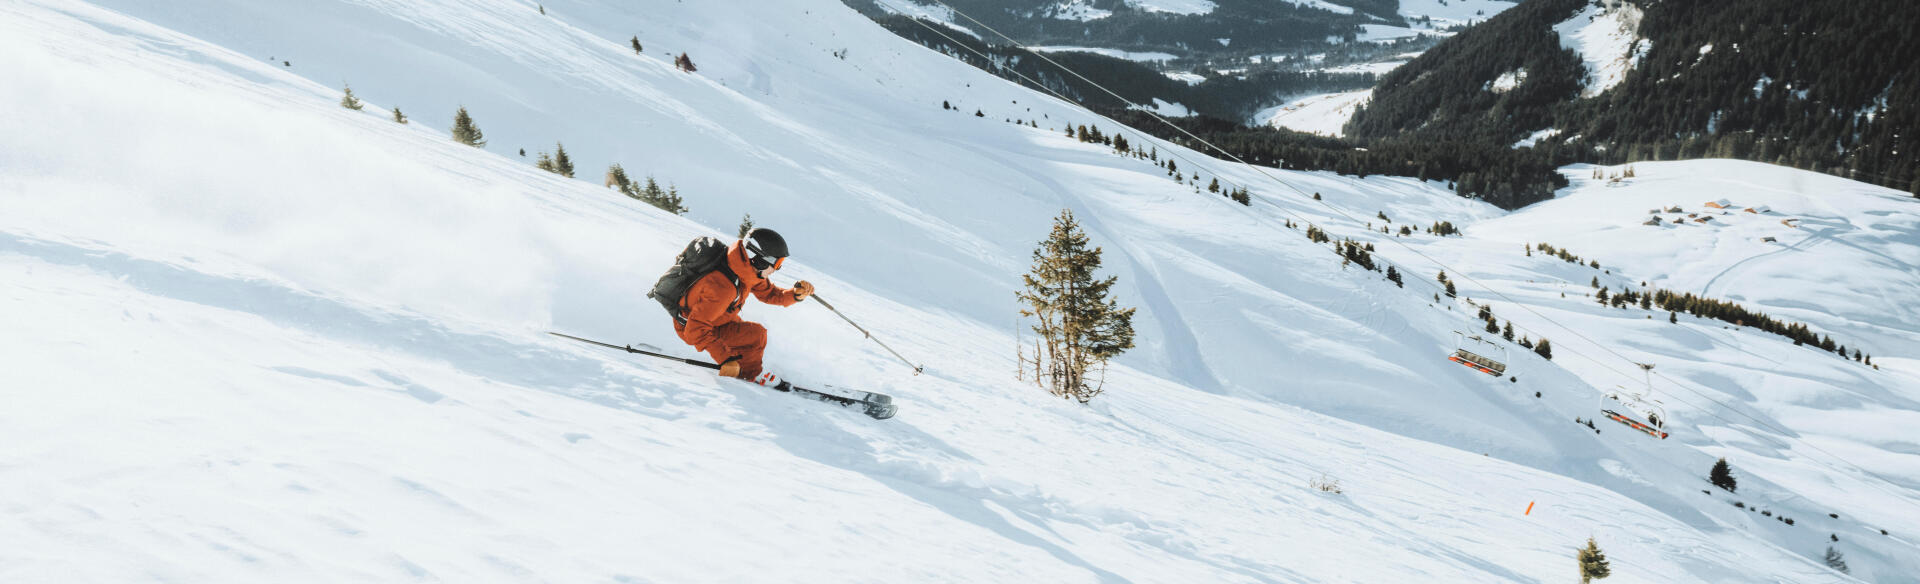 Choisir votre matériel de ski